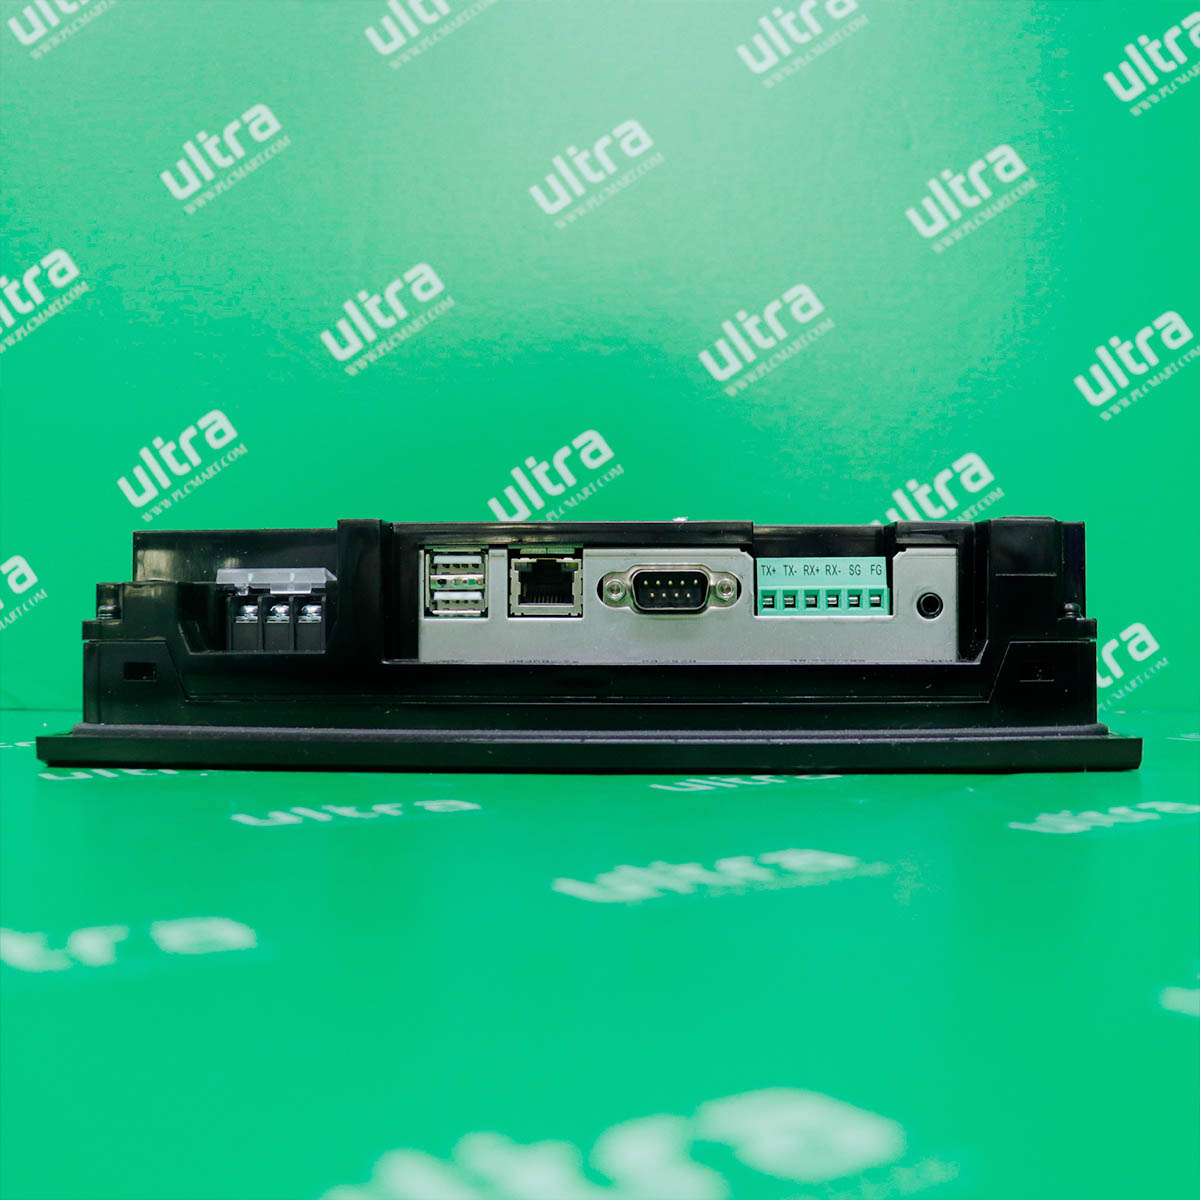 [미사용] iXP50-TTA/DC LS산전 8.4인치 터치스크린